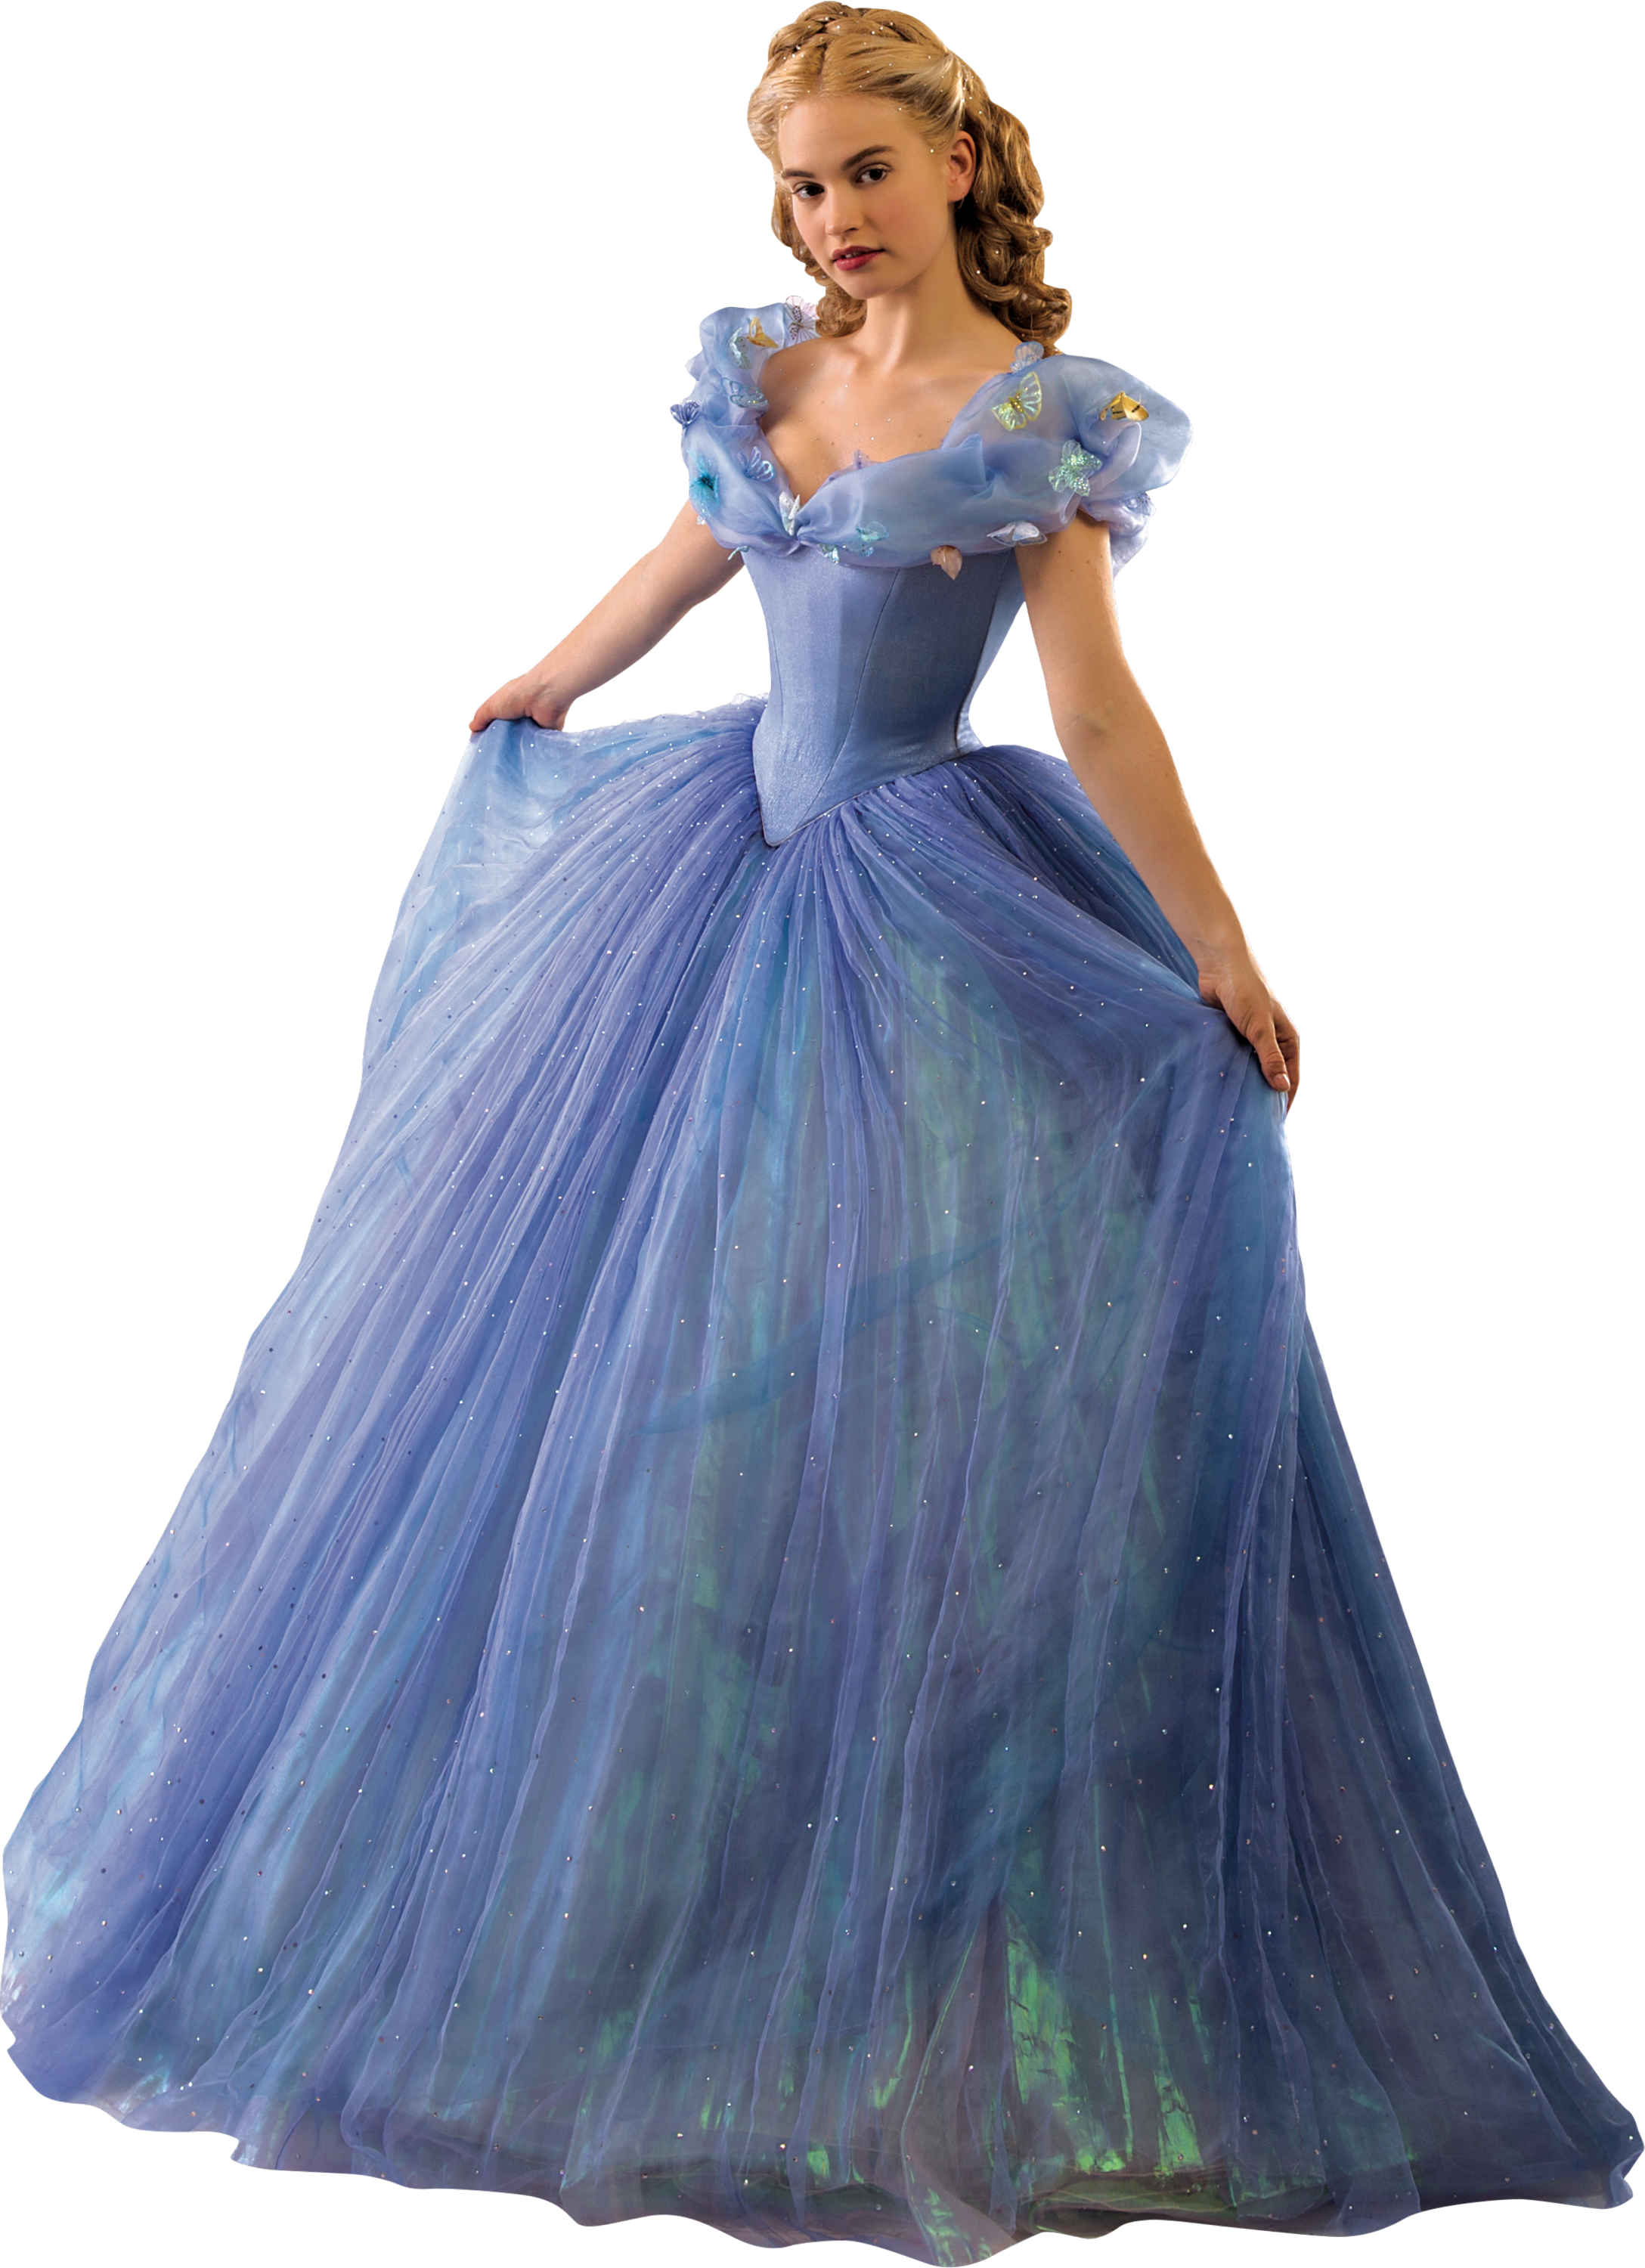 Cinderella (2015) | Disney Princess | Fandom